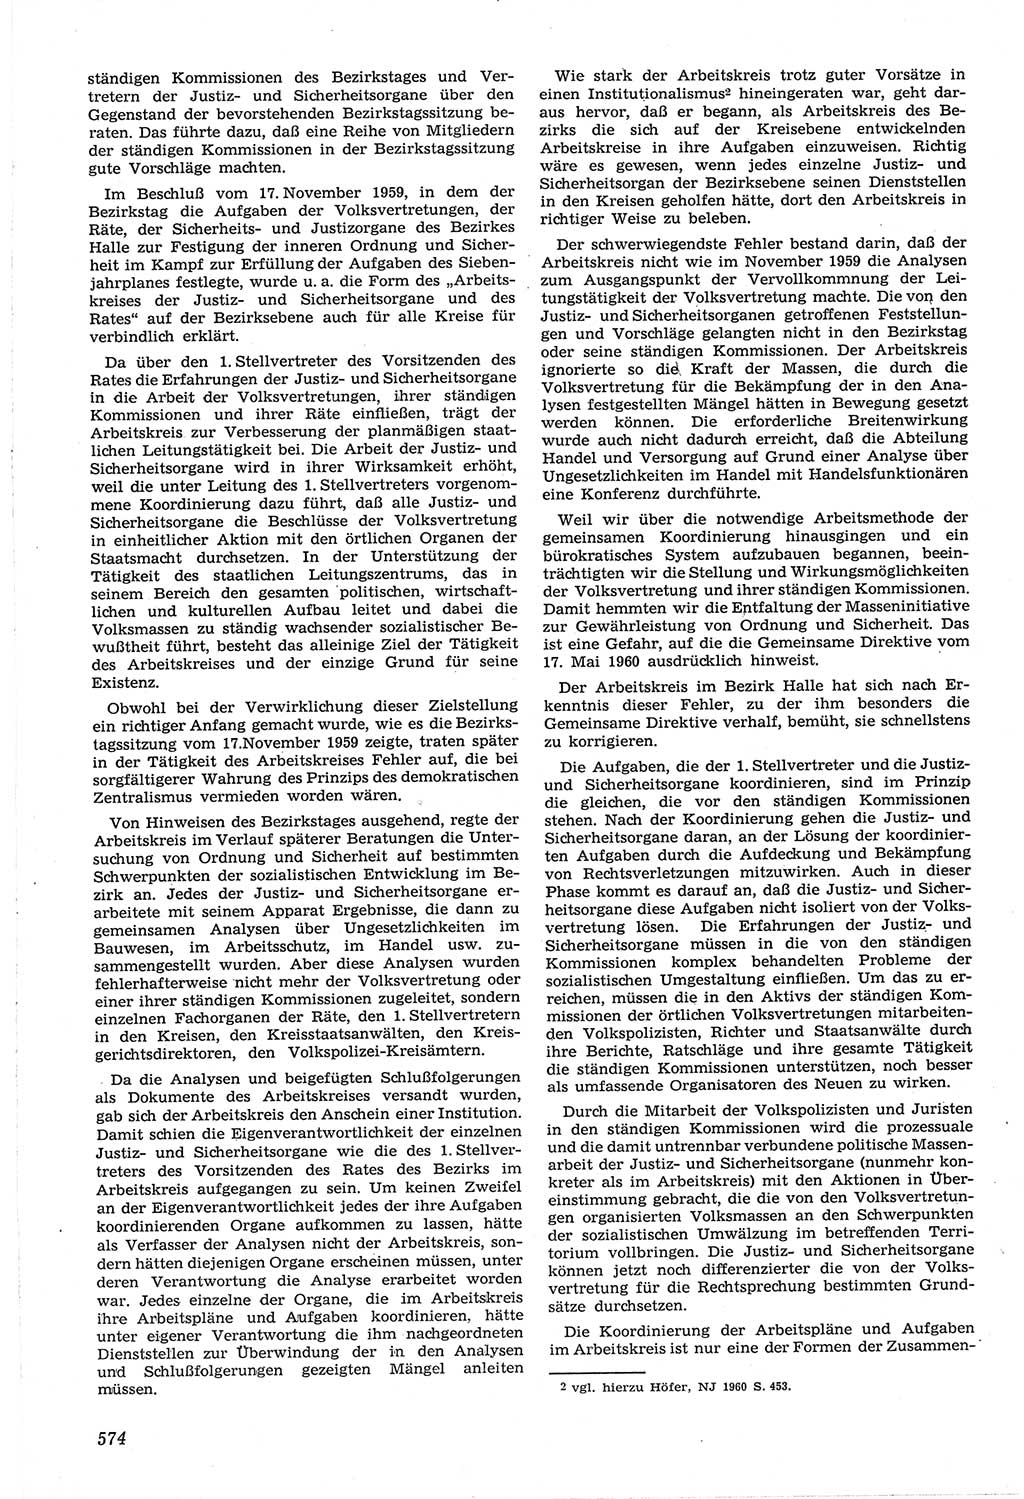 Neue Justiz (NJ), Zeitschrift für Recht und Rechtswissenschaft [Deutsche Demokratische Republik (DDR)], 14. Jahrgang 1960, Seite 574 (NJ DDR 1960, S. 574)